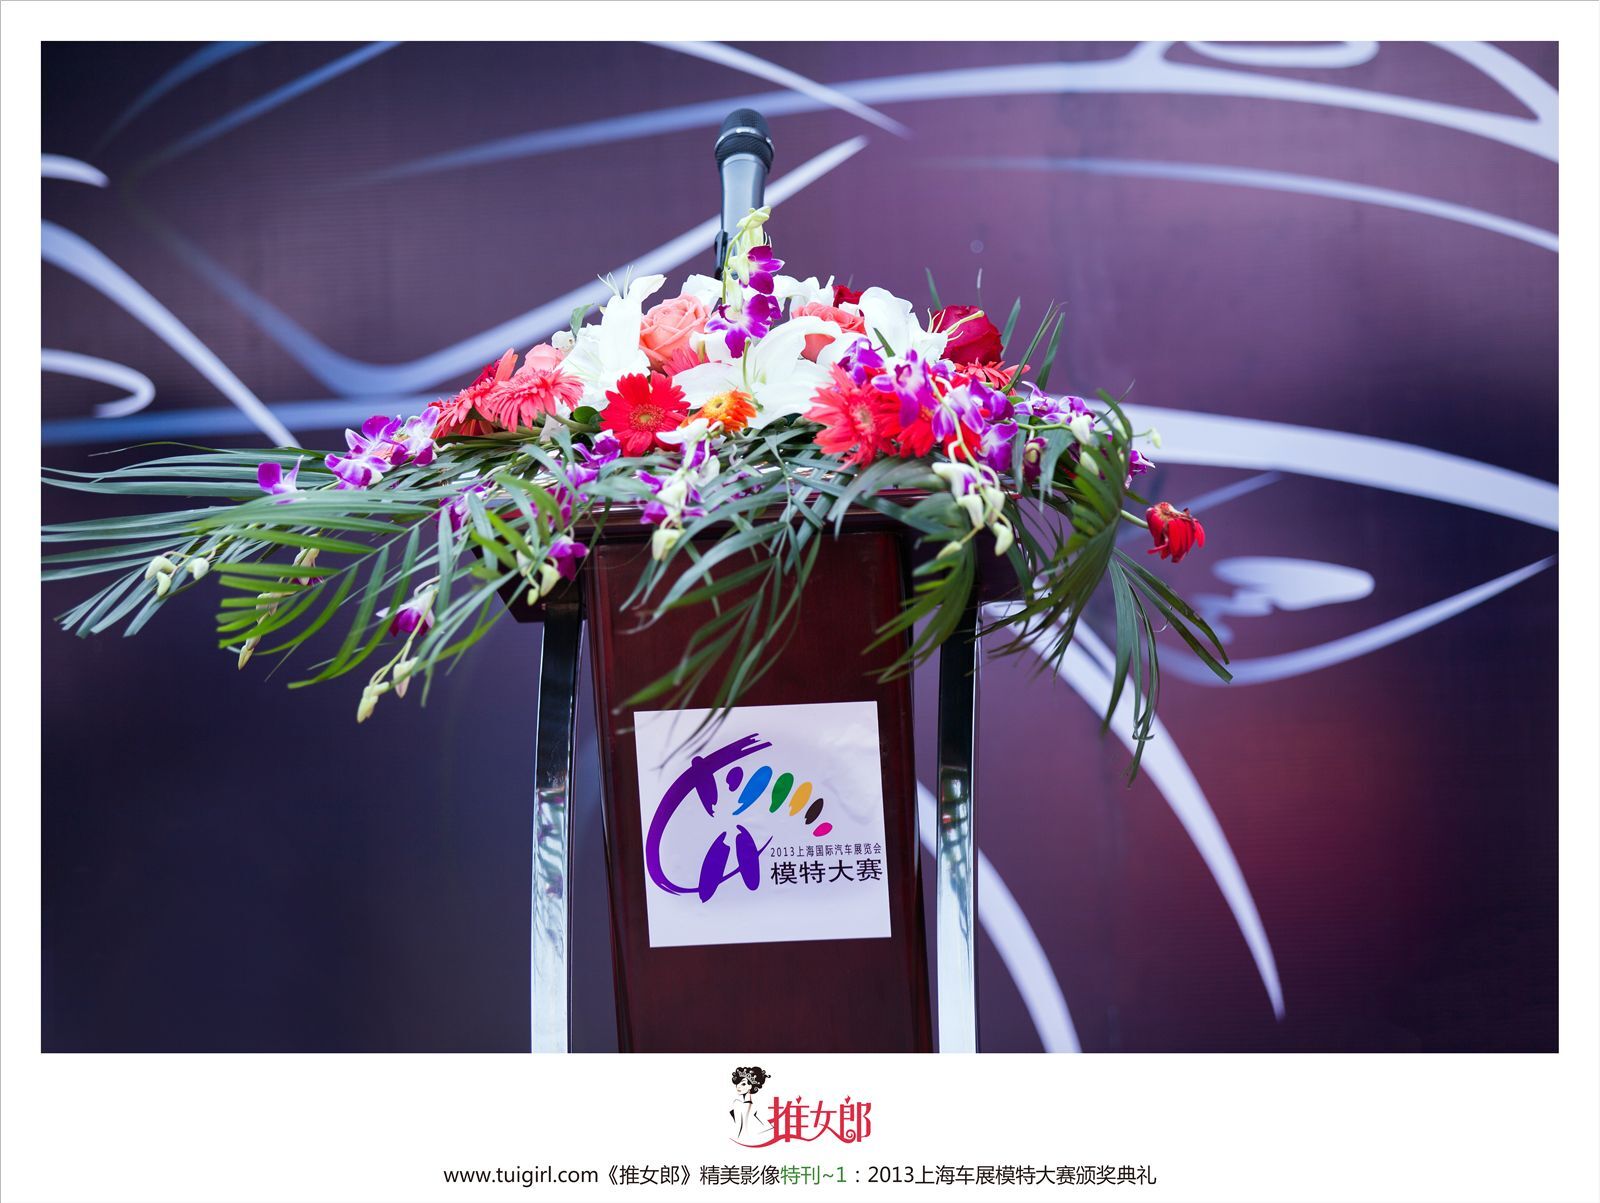 [tweet girl] 2013.04.22 Shanghai auto show special issue Li Yingzhi, Xin Nan, Zhao Qian